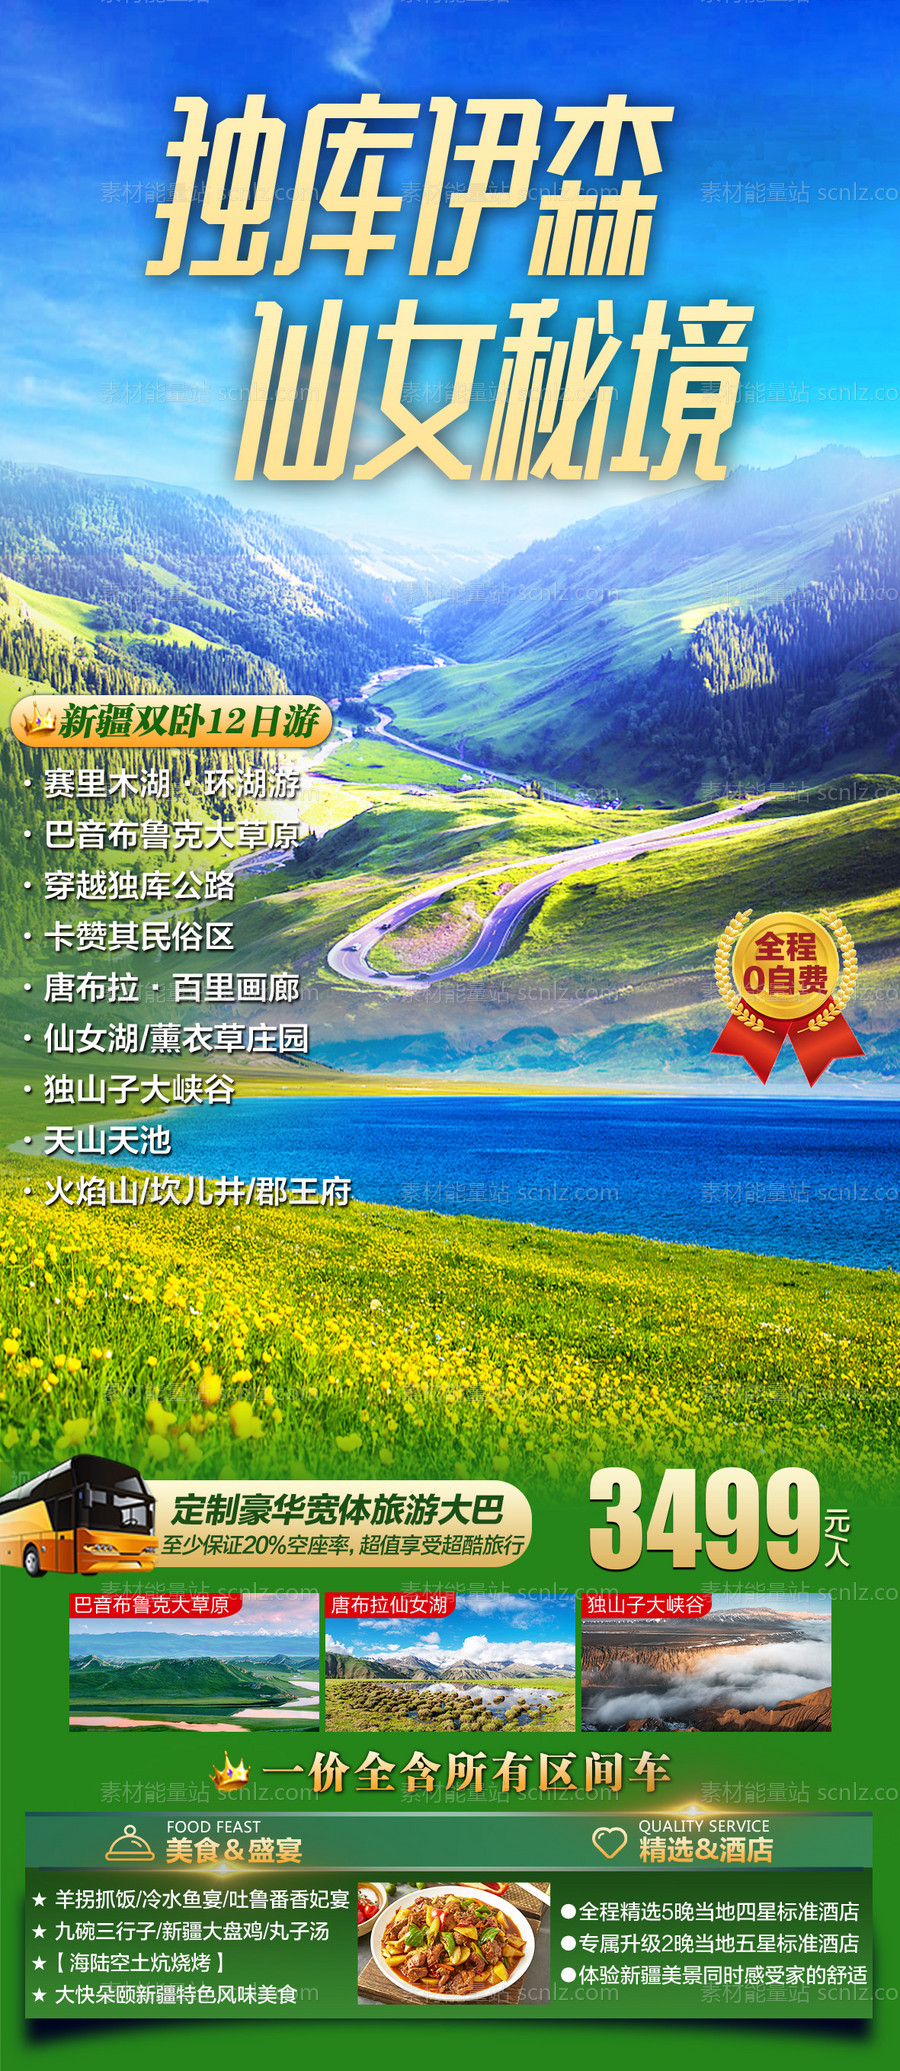 素材能量站-新疆旅游海报